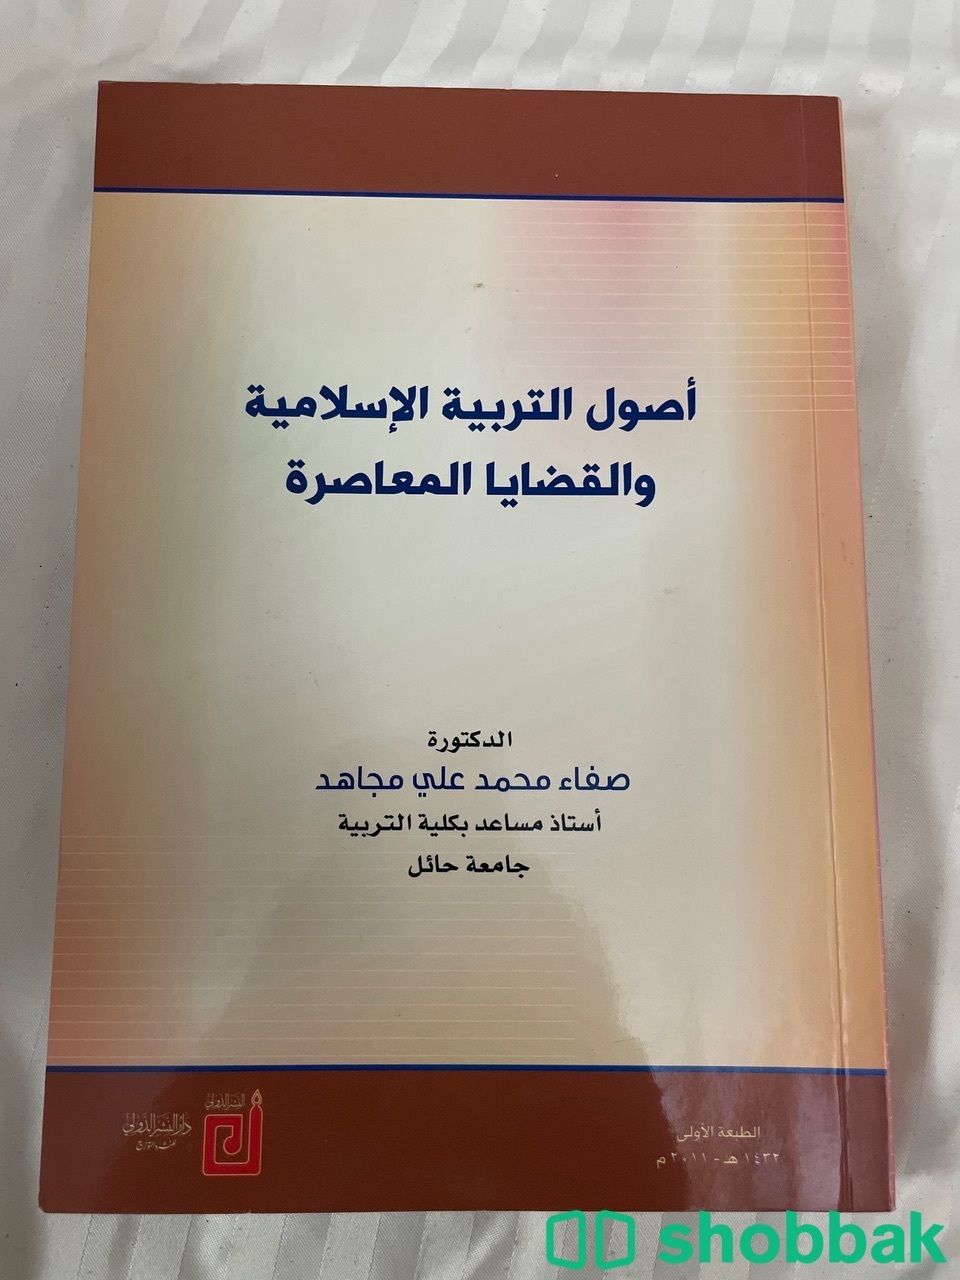 كتاب اصول التربية الاسلاميه والقضايا المعاصرة Shobbak Saudi Arabia